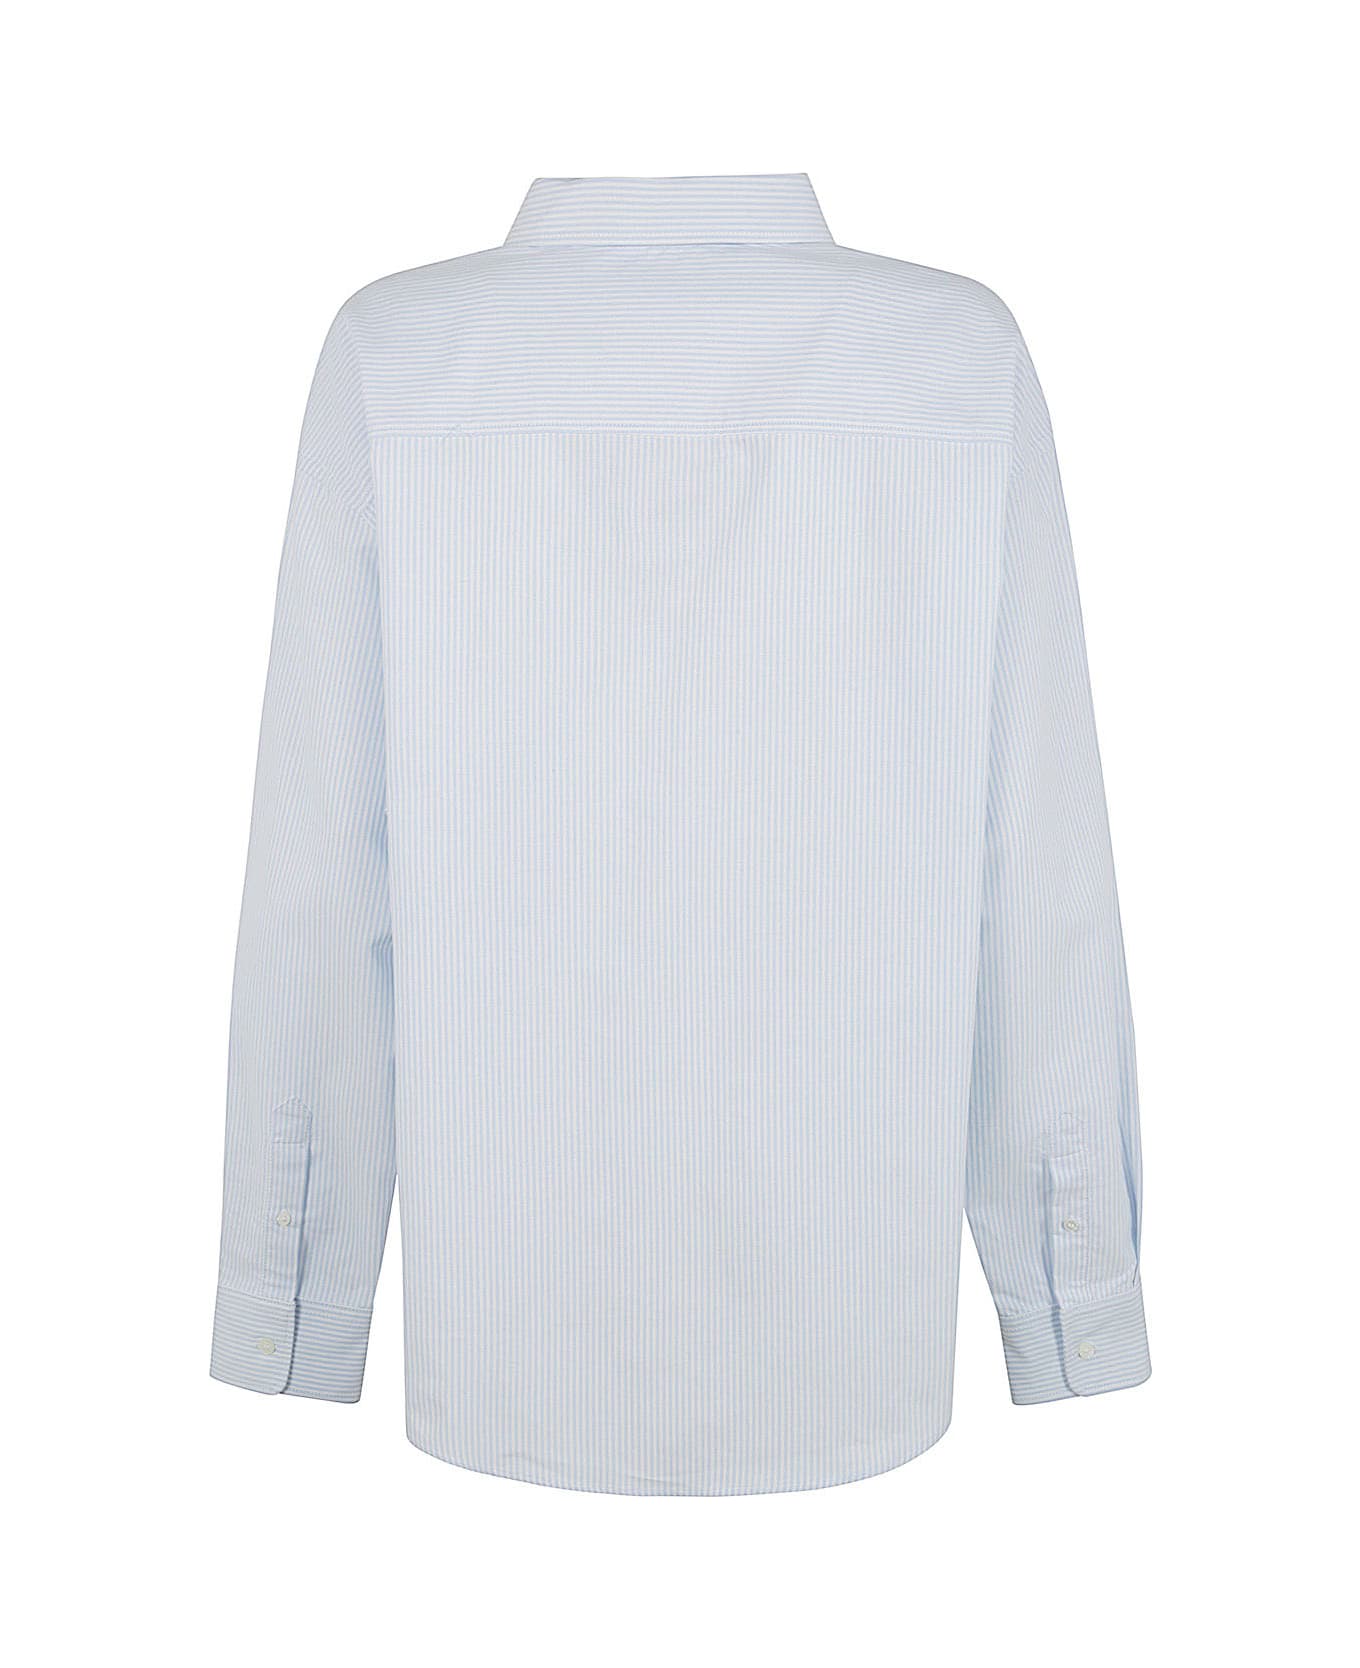 Ami Alexandre Mattiussi Boxy Fit Shirt - Sky Blue Natural White